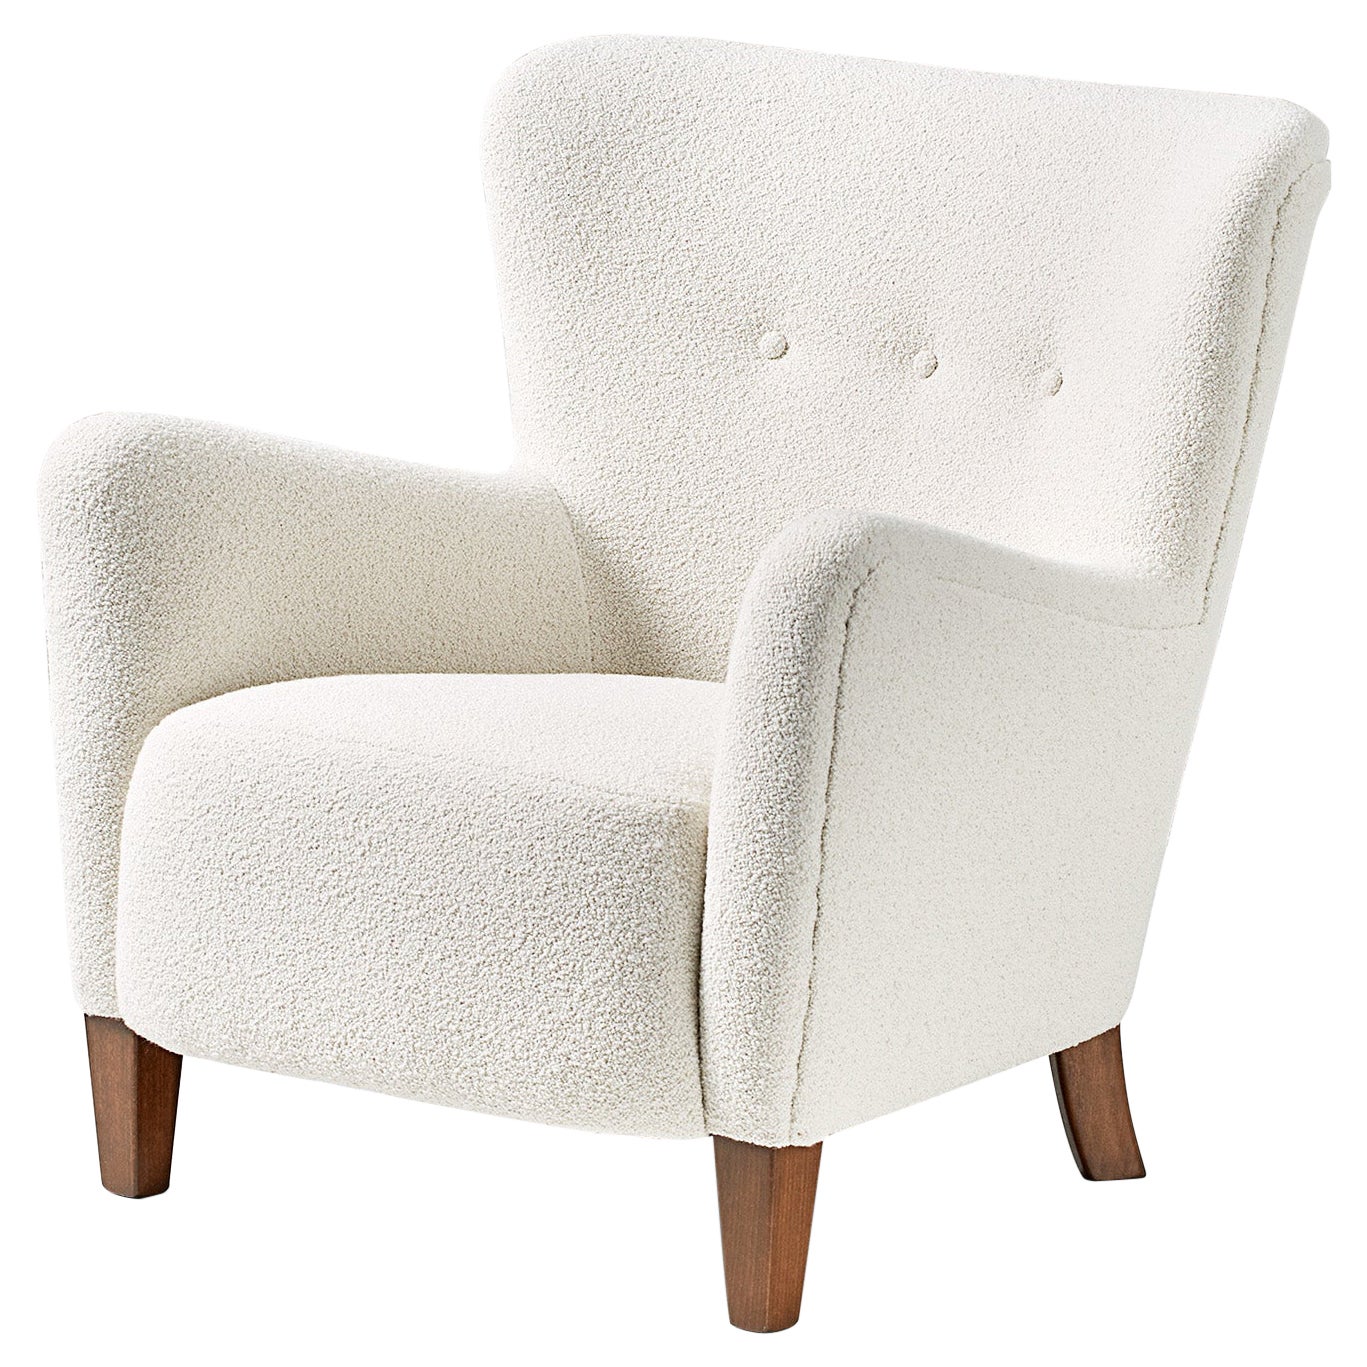 Custom Made RYO Boucle Lounge Chair